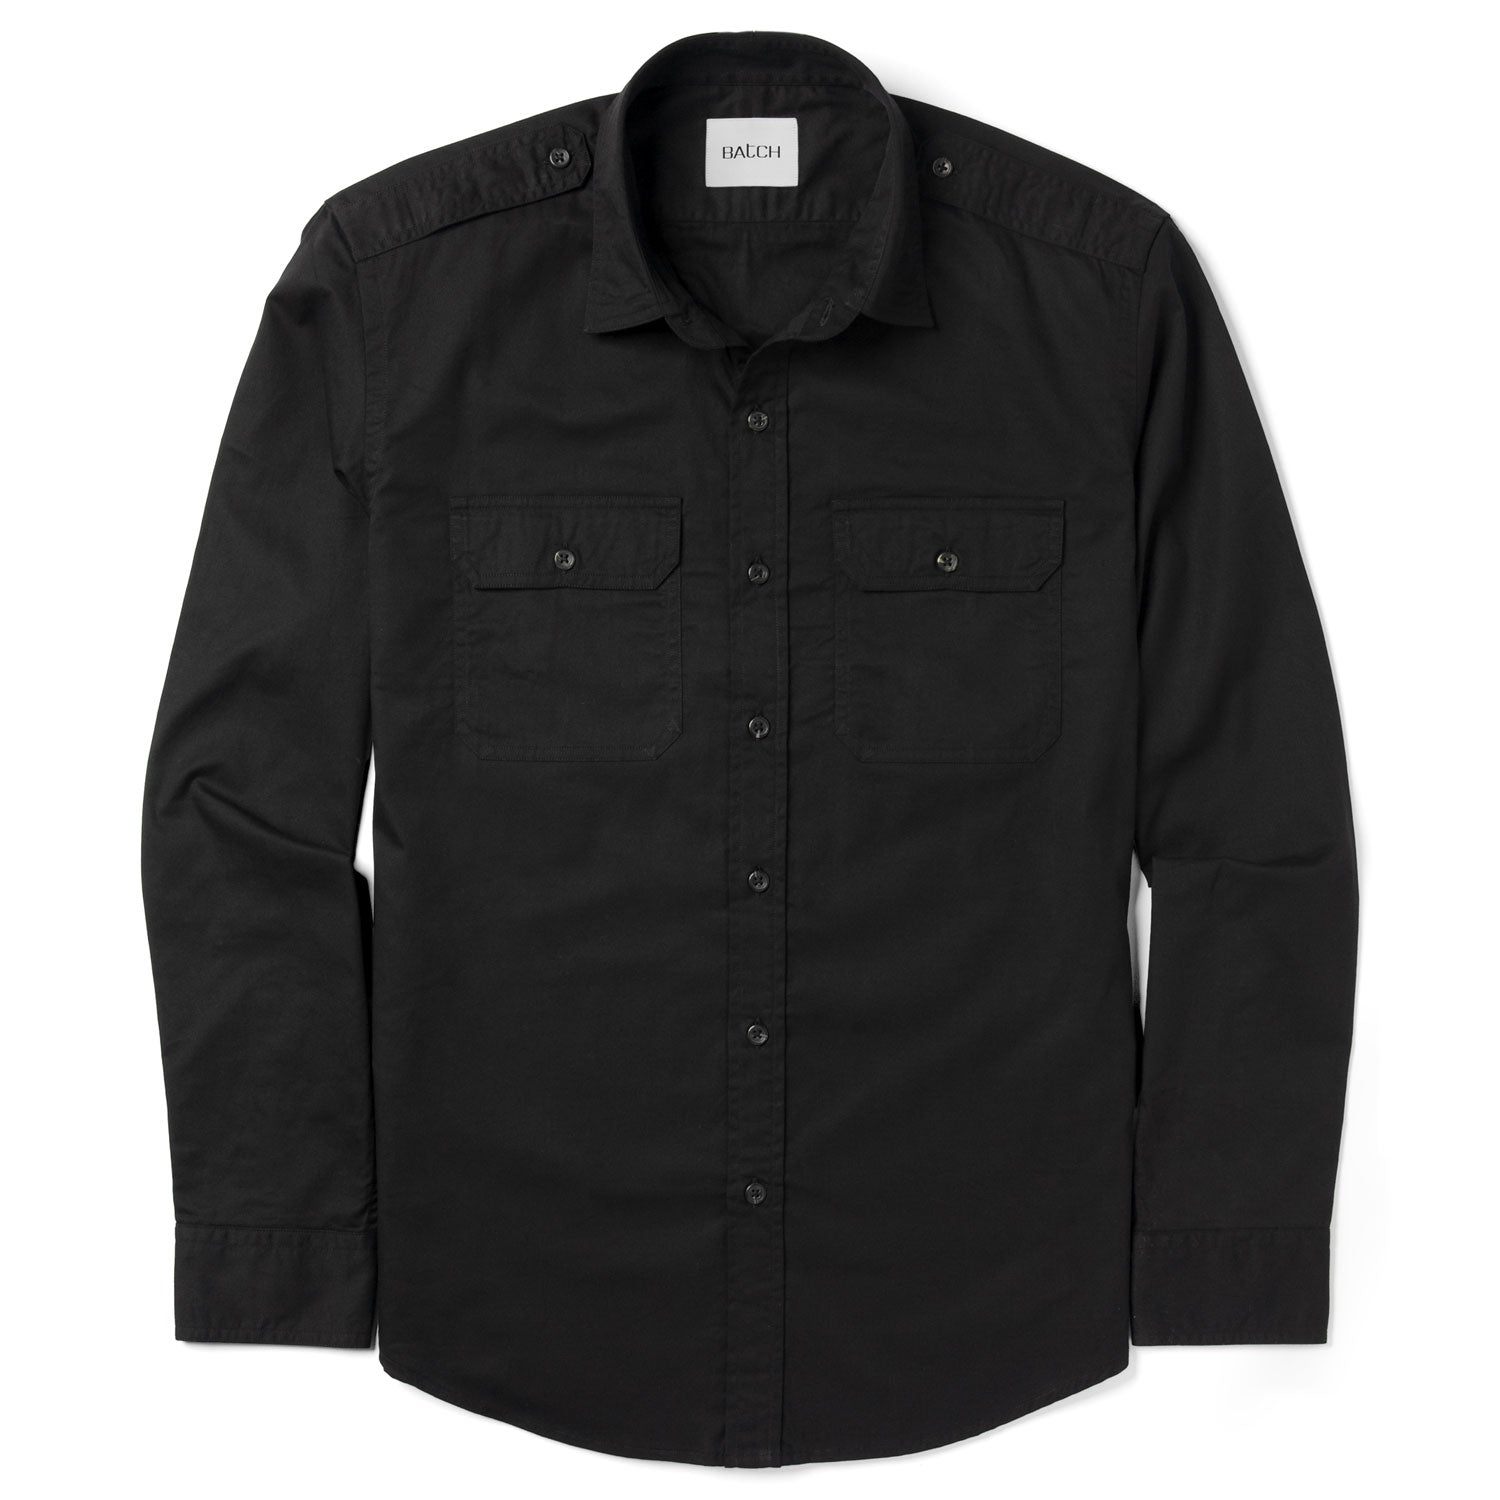 Smith Utility Shirt – Black Cotton Twill